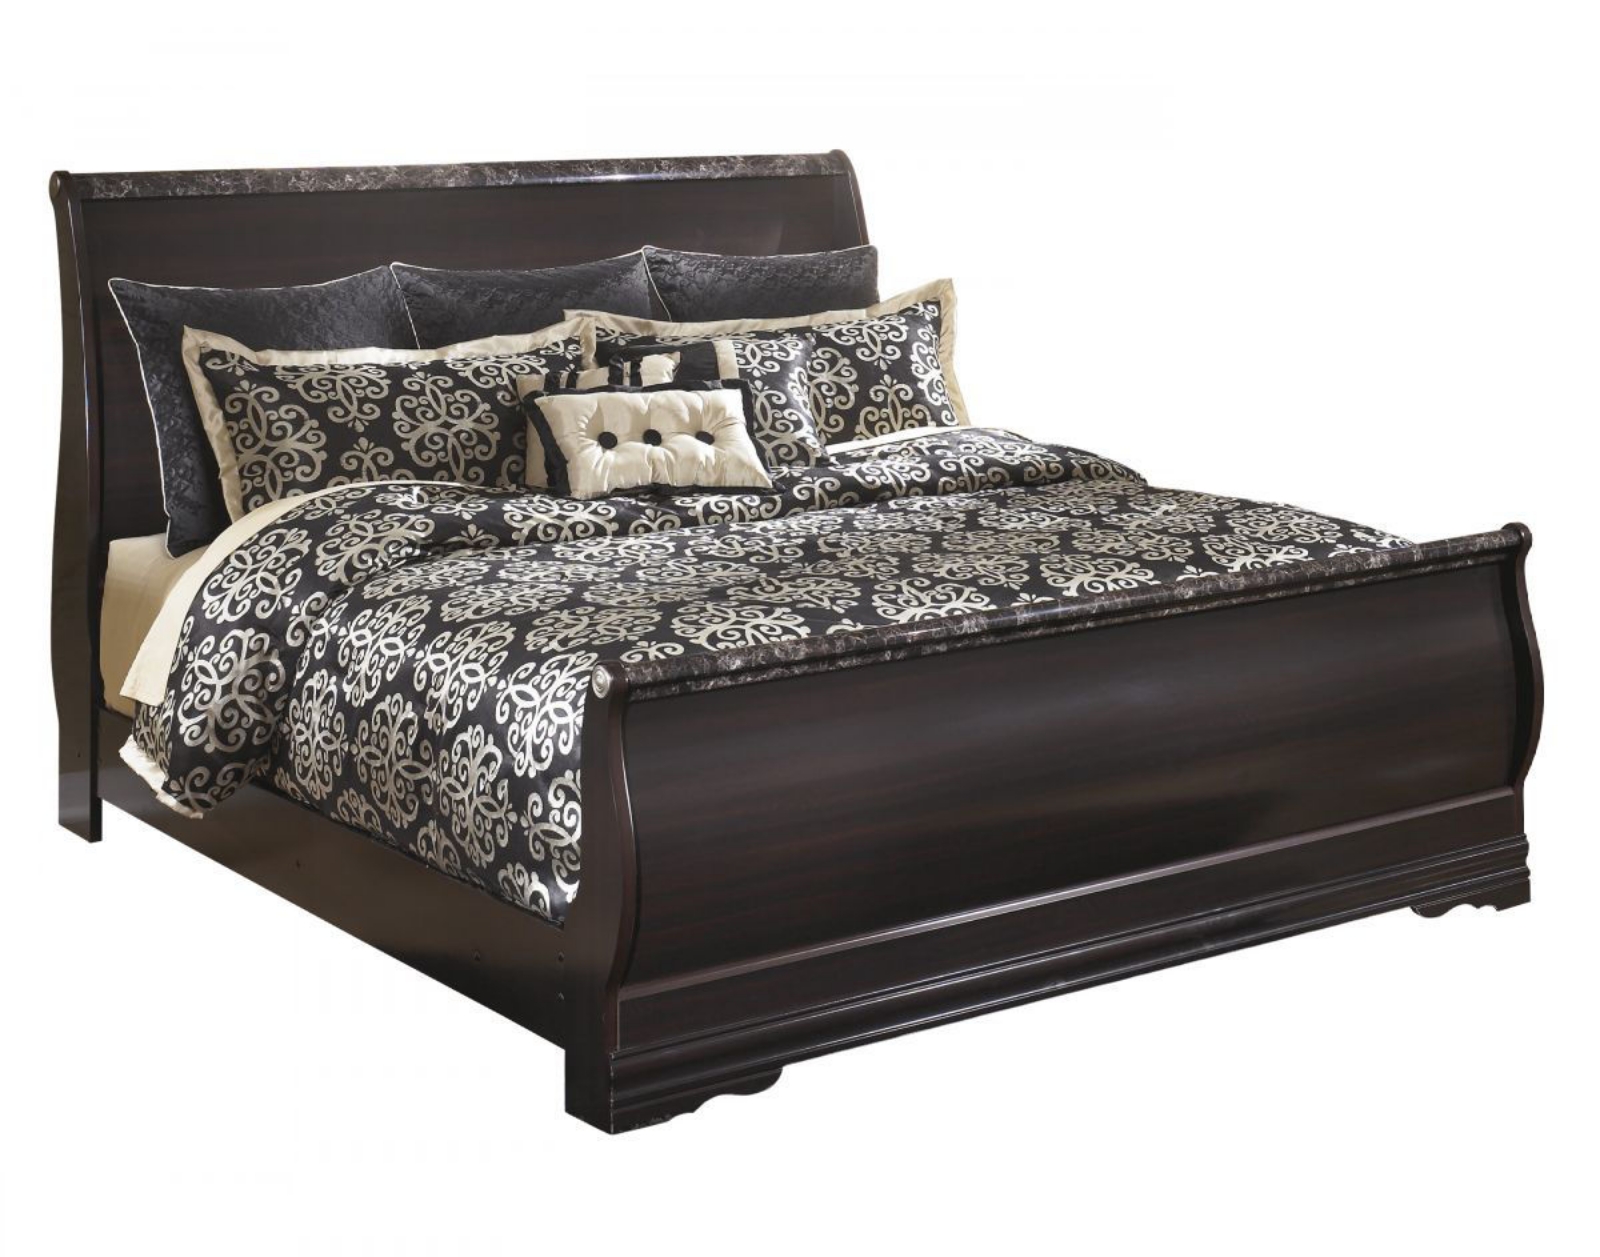 Picture of Esmarelda Queen Size Bed